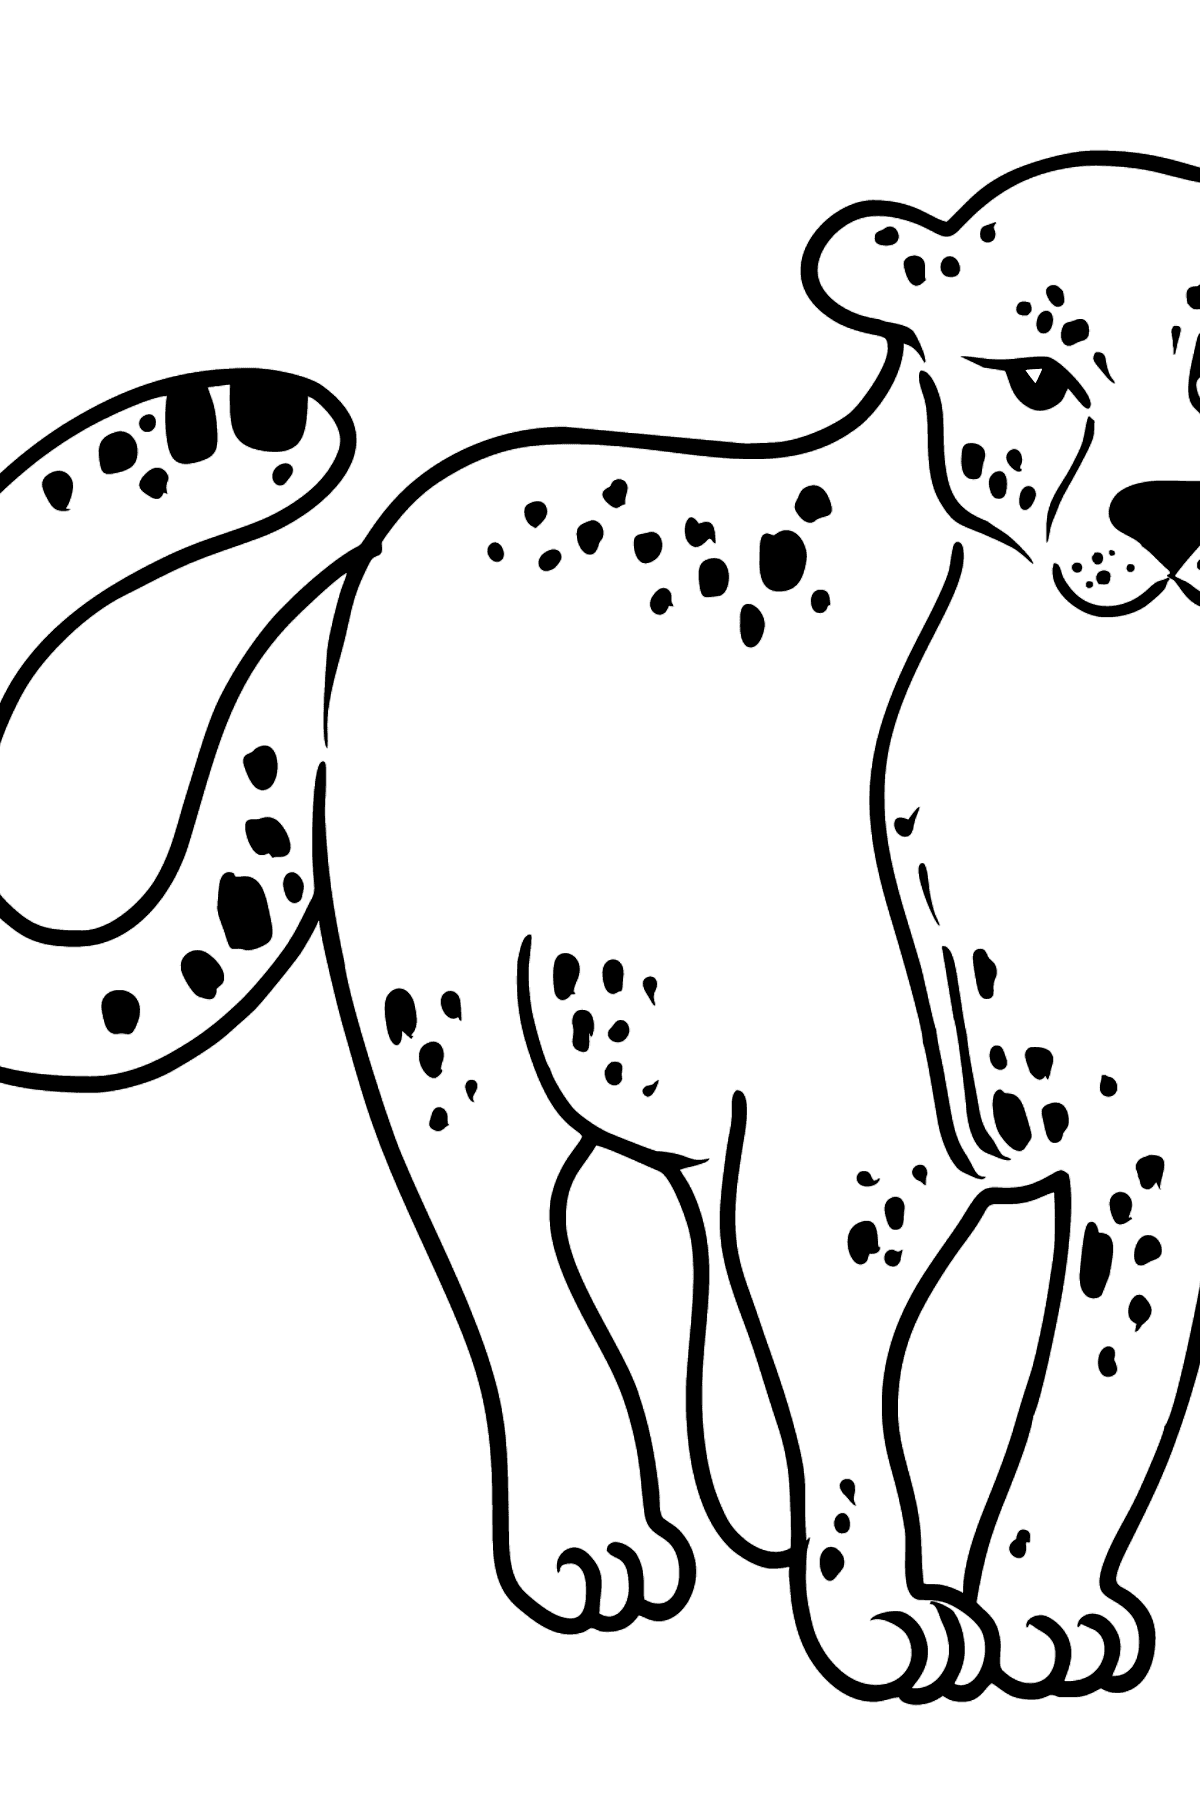 Desenho para colorir do leopardo - Imagens para Colorir para Crianças